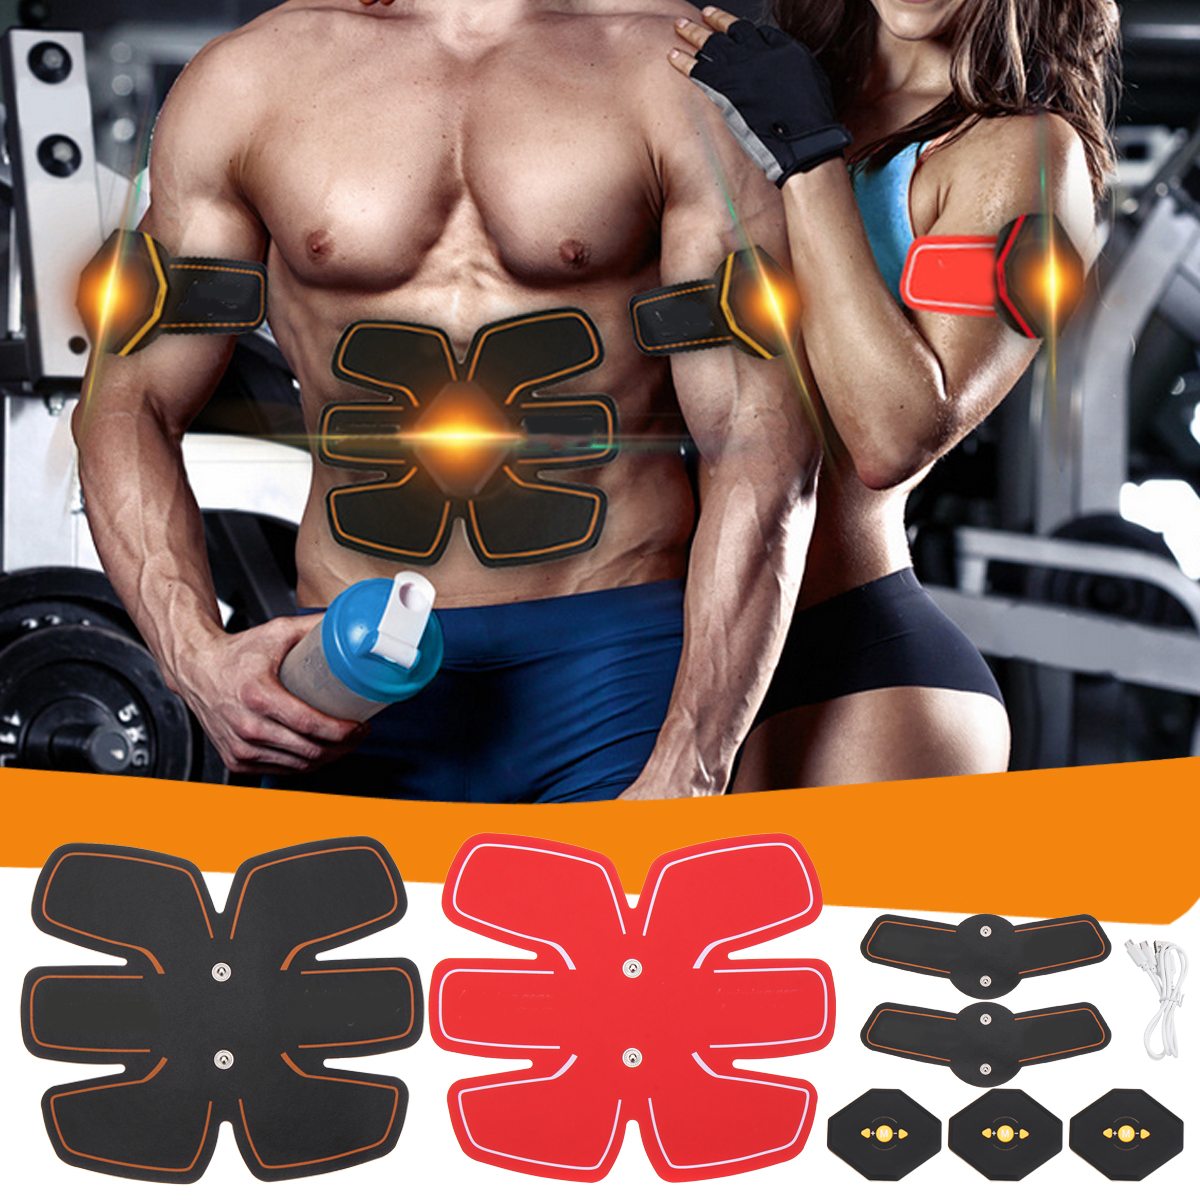 Yunai-Unisex-Abdominal-Toning-Arm-Muscle-Stimulator-Belt-EMS-Training-Body-Exercise-Trainer-Toner-AB-1638500-2